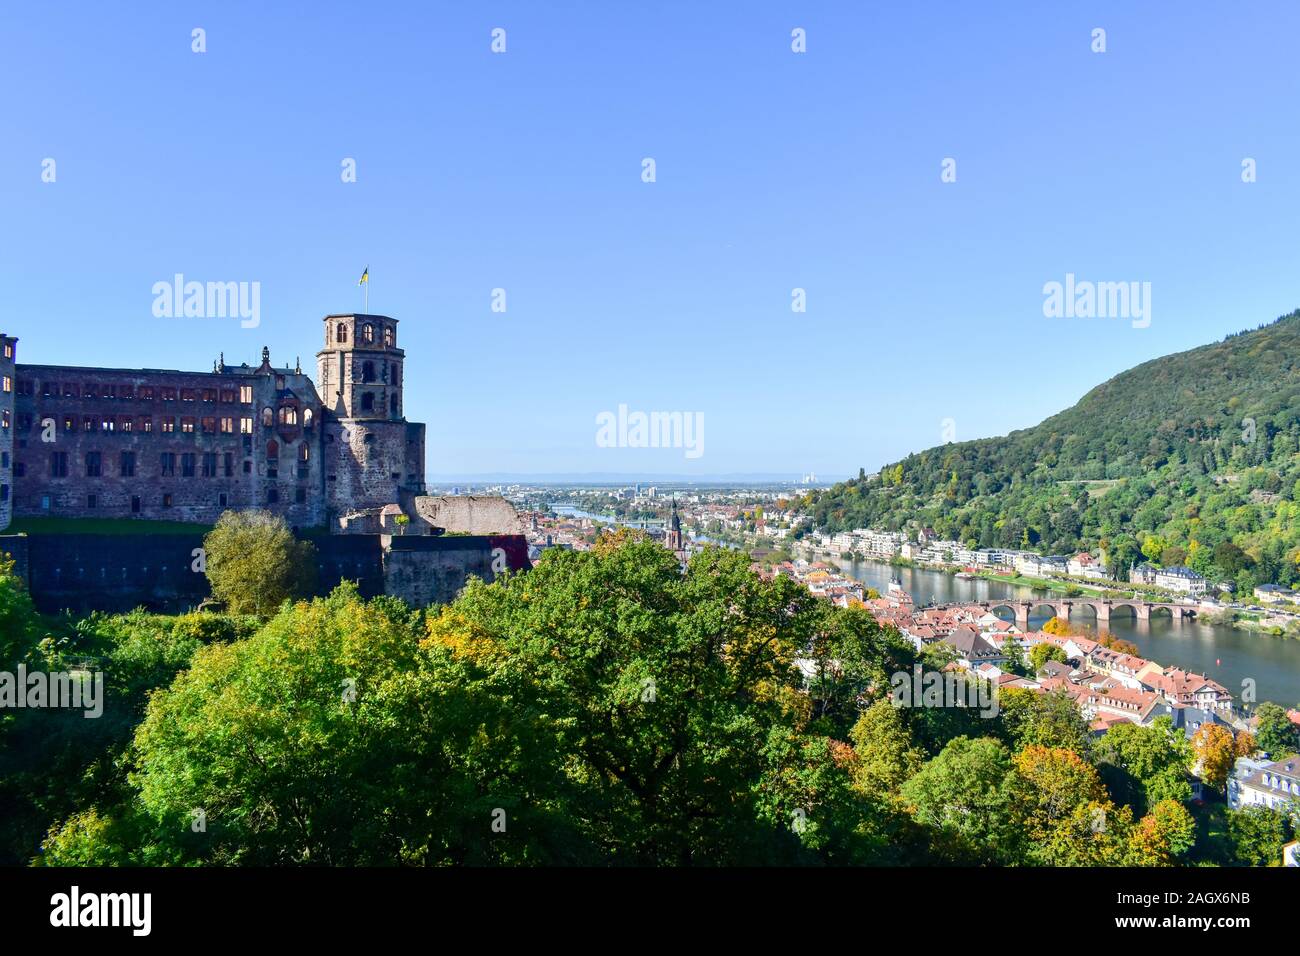 Vista aérea panorámica de Heidelberg con castillo. Foto de stock